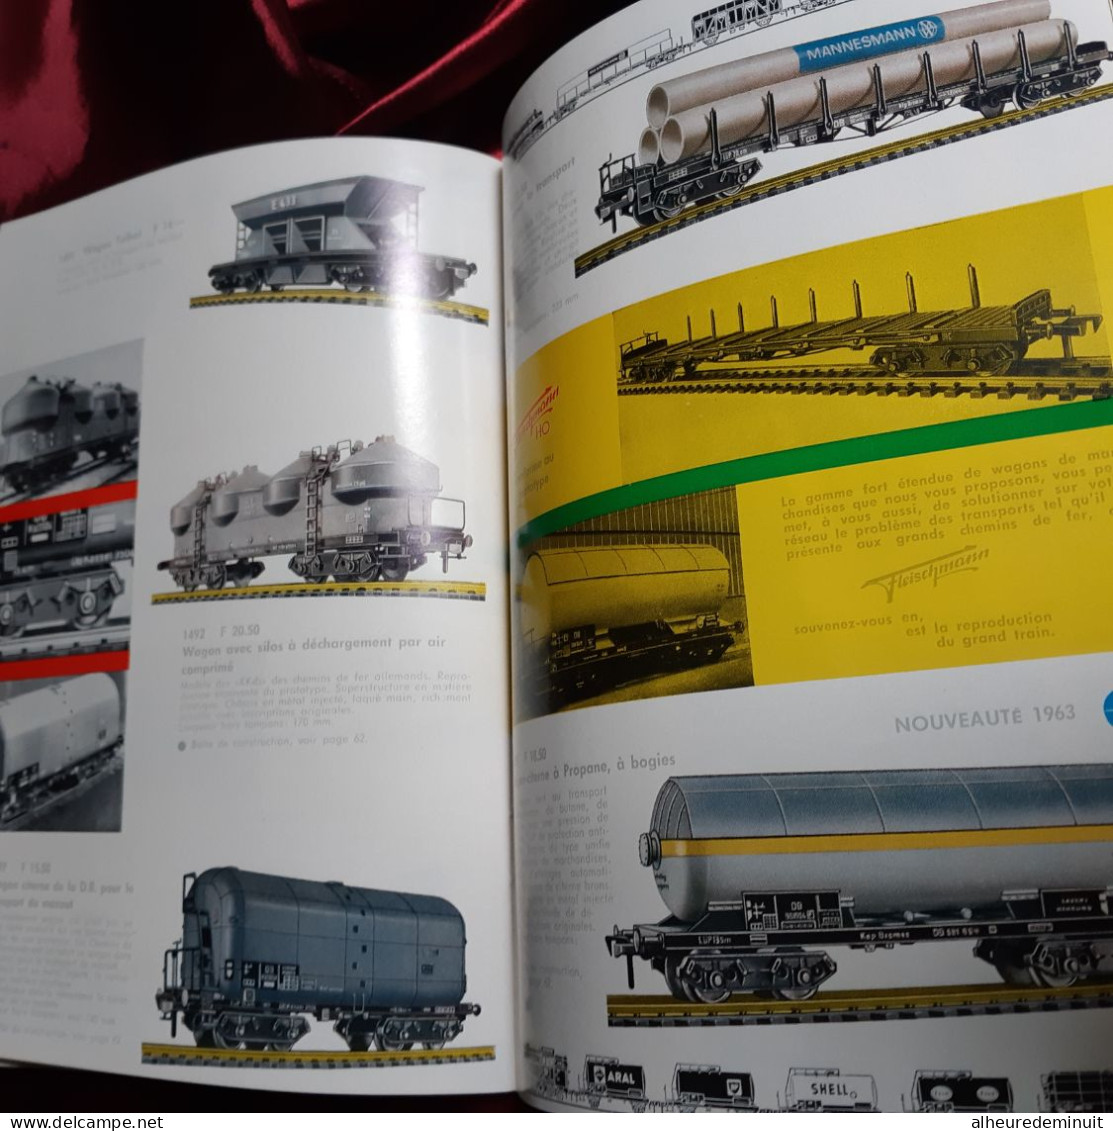 catalogue1963-64"FLEISCHMANN-HO"wagons"locomotive diesel"train"chemin de fer"rail"machine à vapeur "à saucisses"meule...